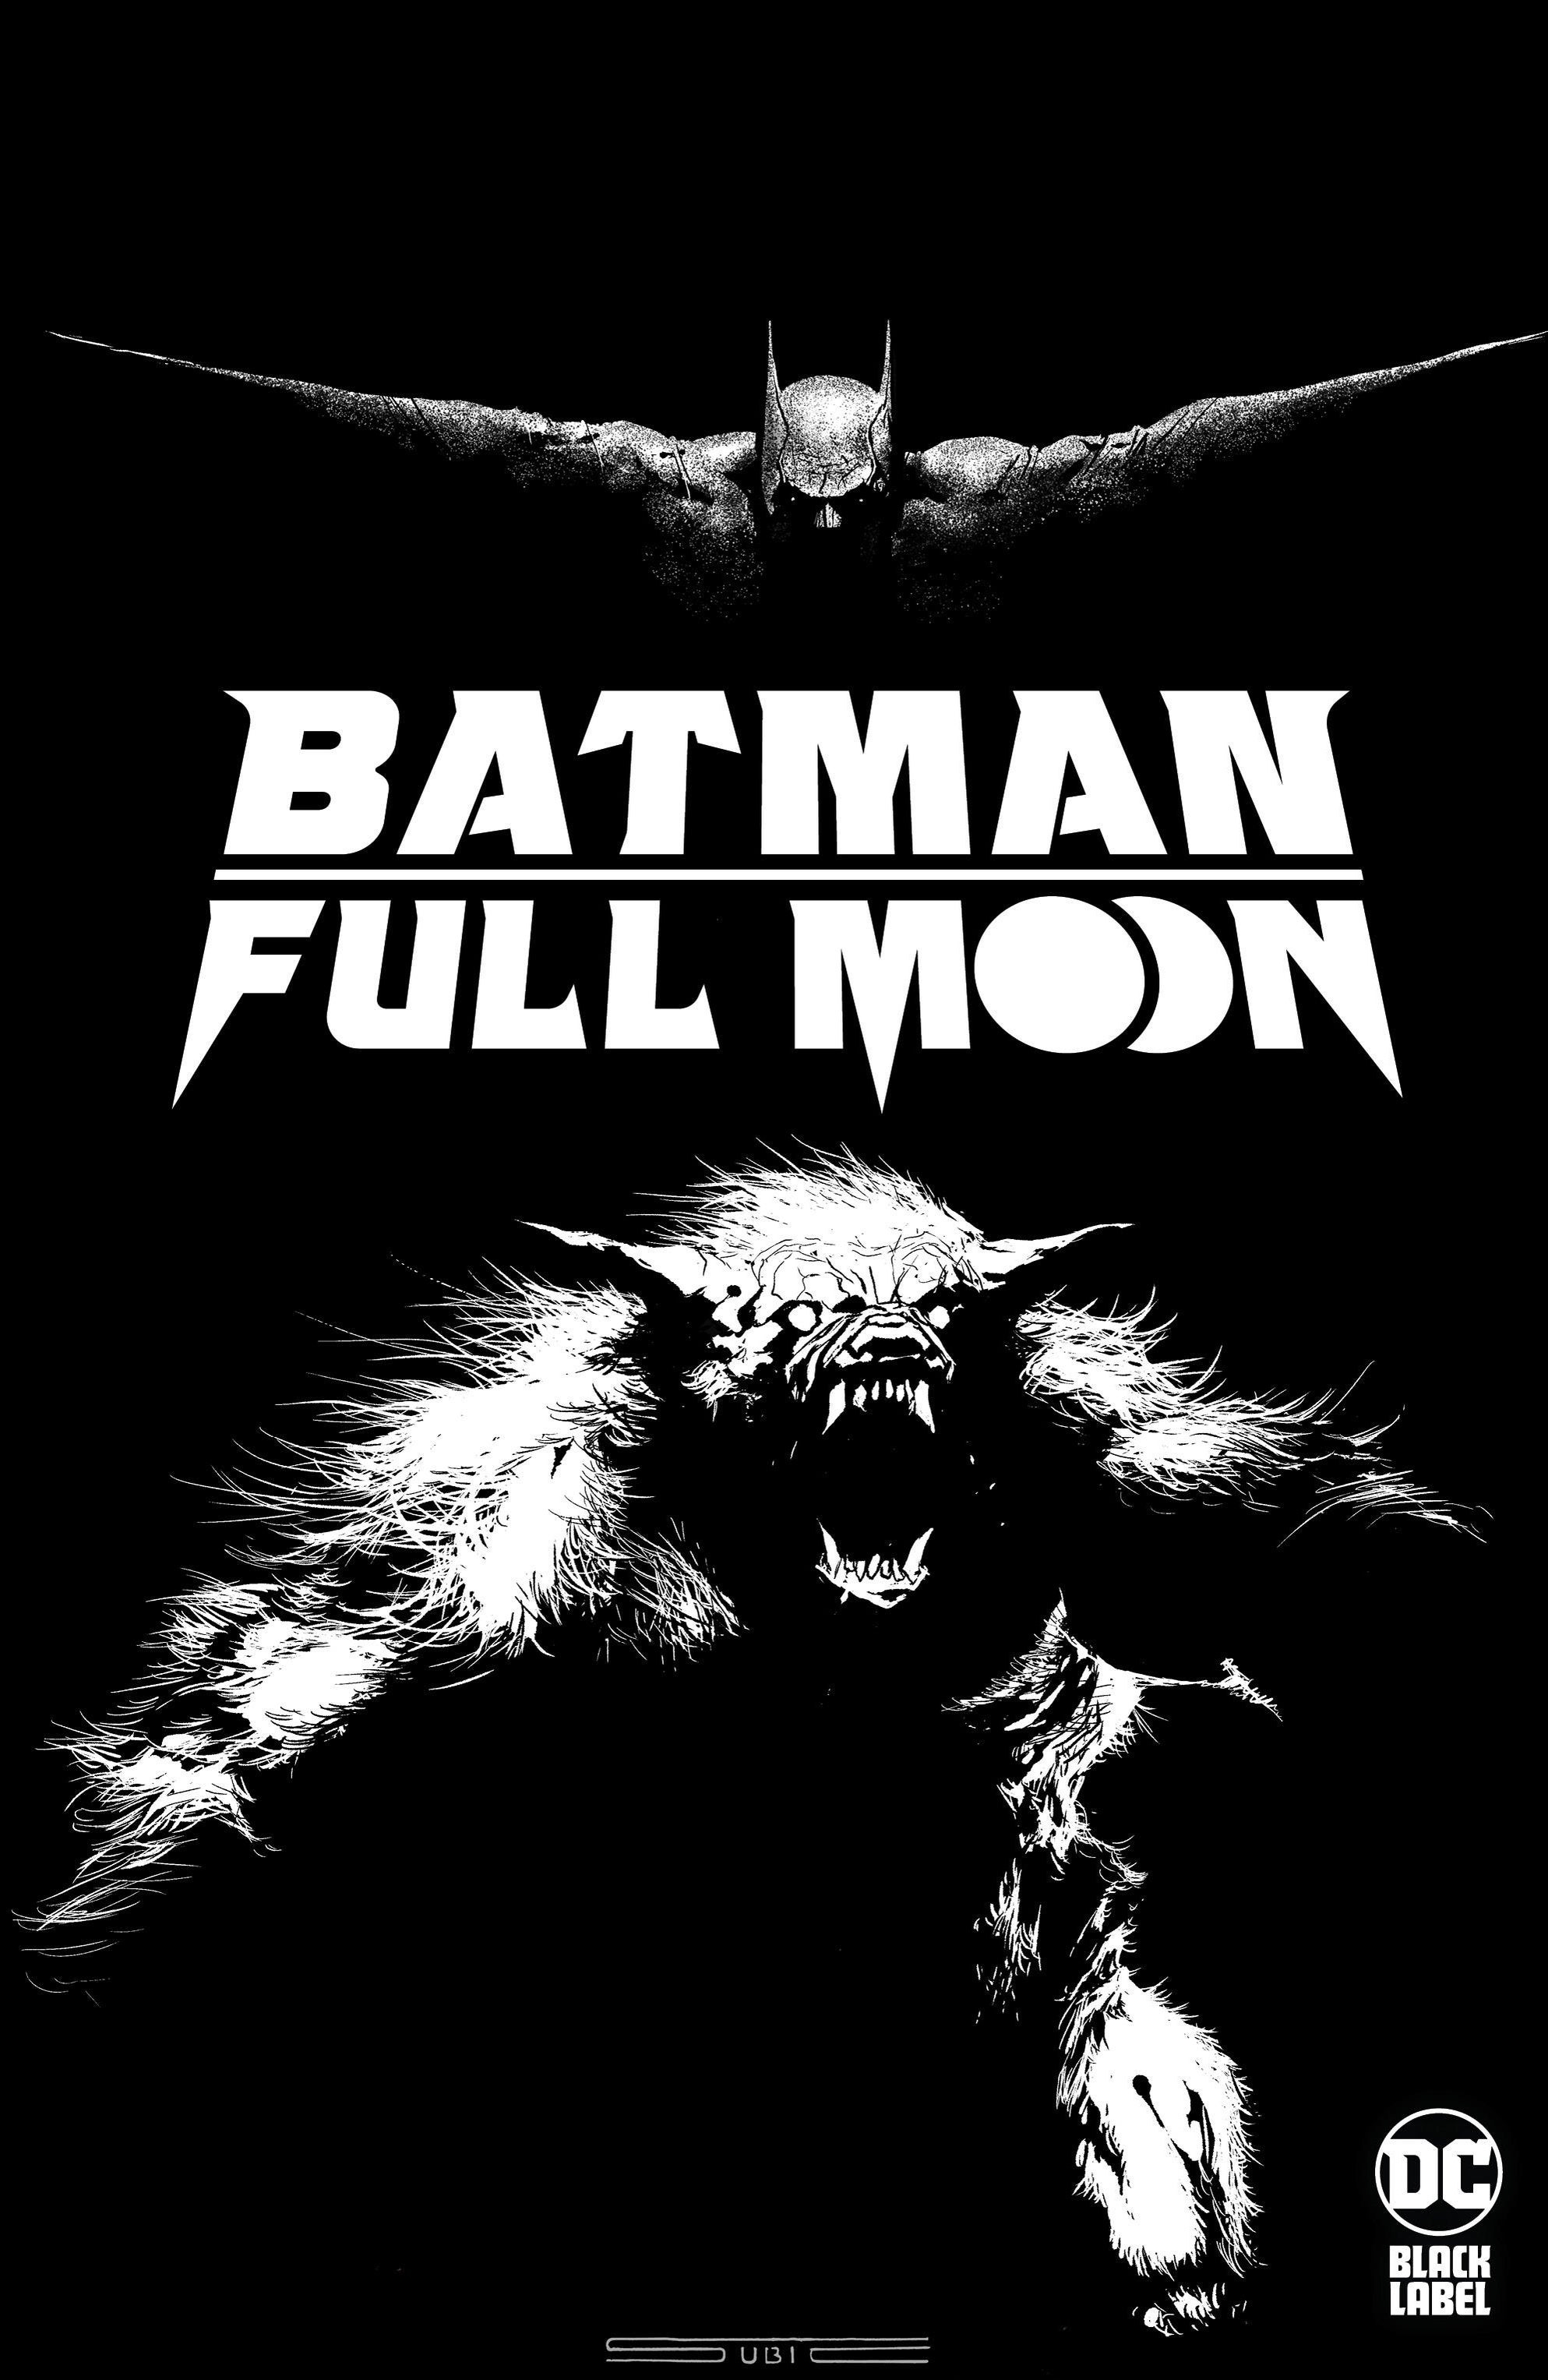 batman-full-moon-1-main-subic.jpg